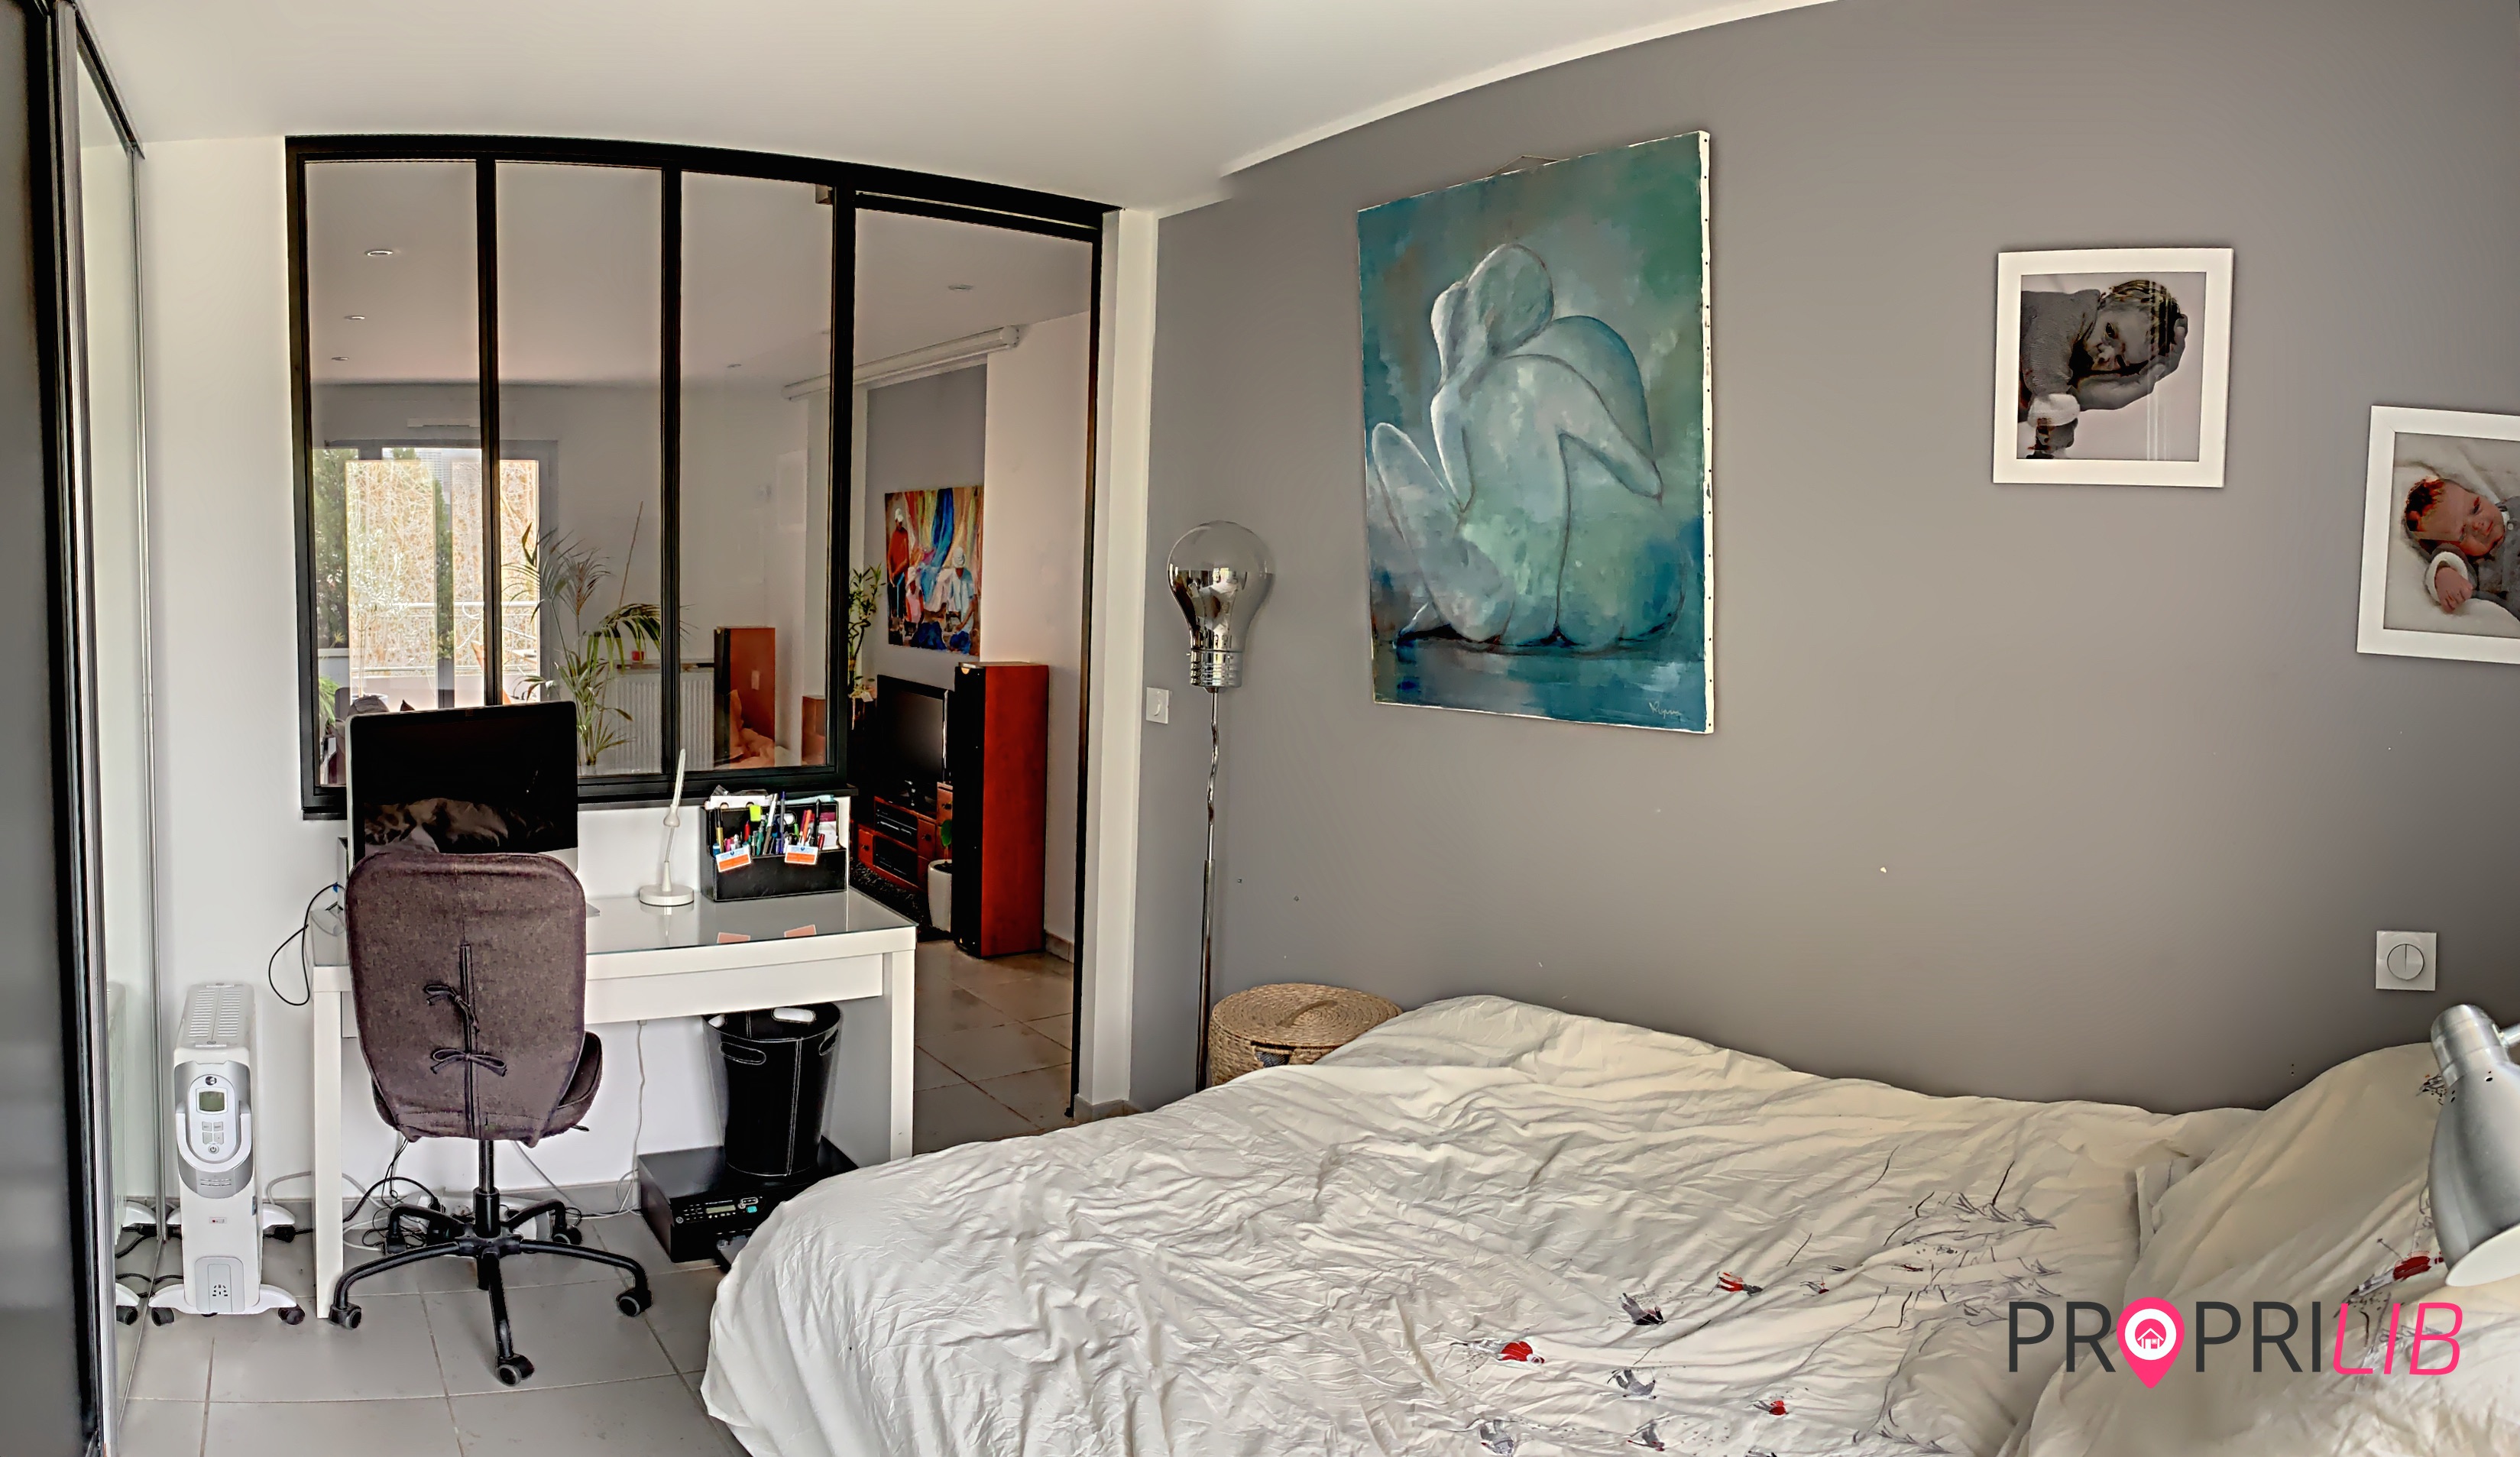 PropriLib l’agence immobilière en ligne au forfait vend cet appartement à Lyon 4ème